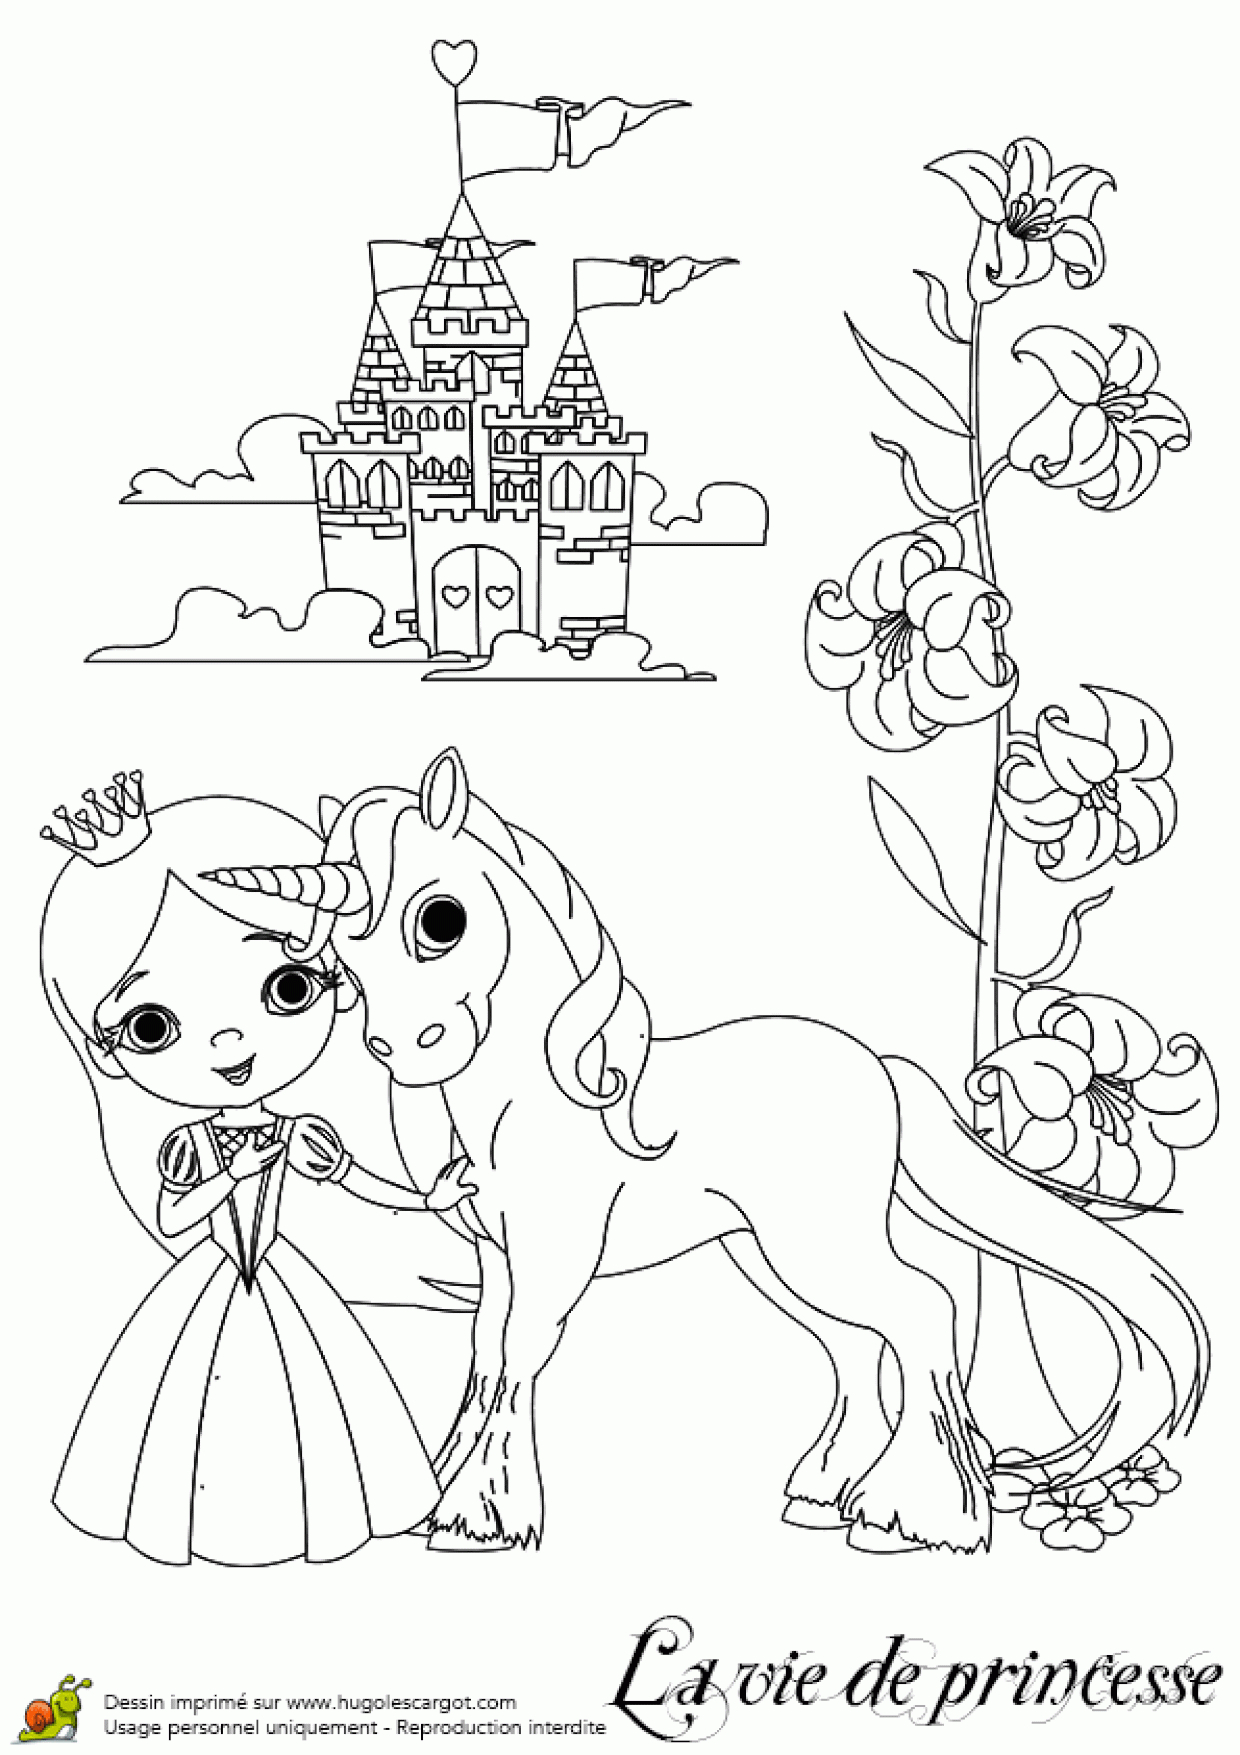 Coloriage D'une Princesse Avec Son Licorne destiné Chateau De Princesse Dessin